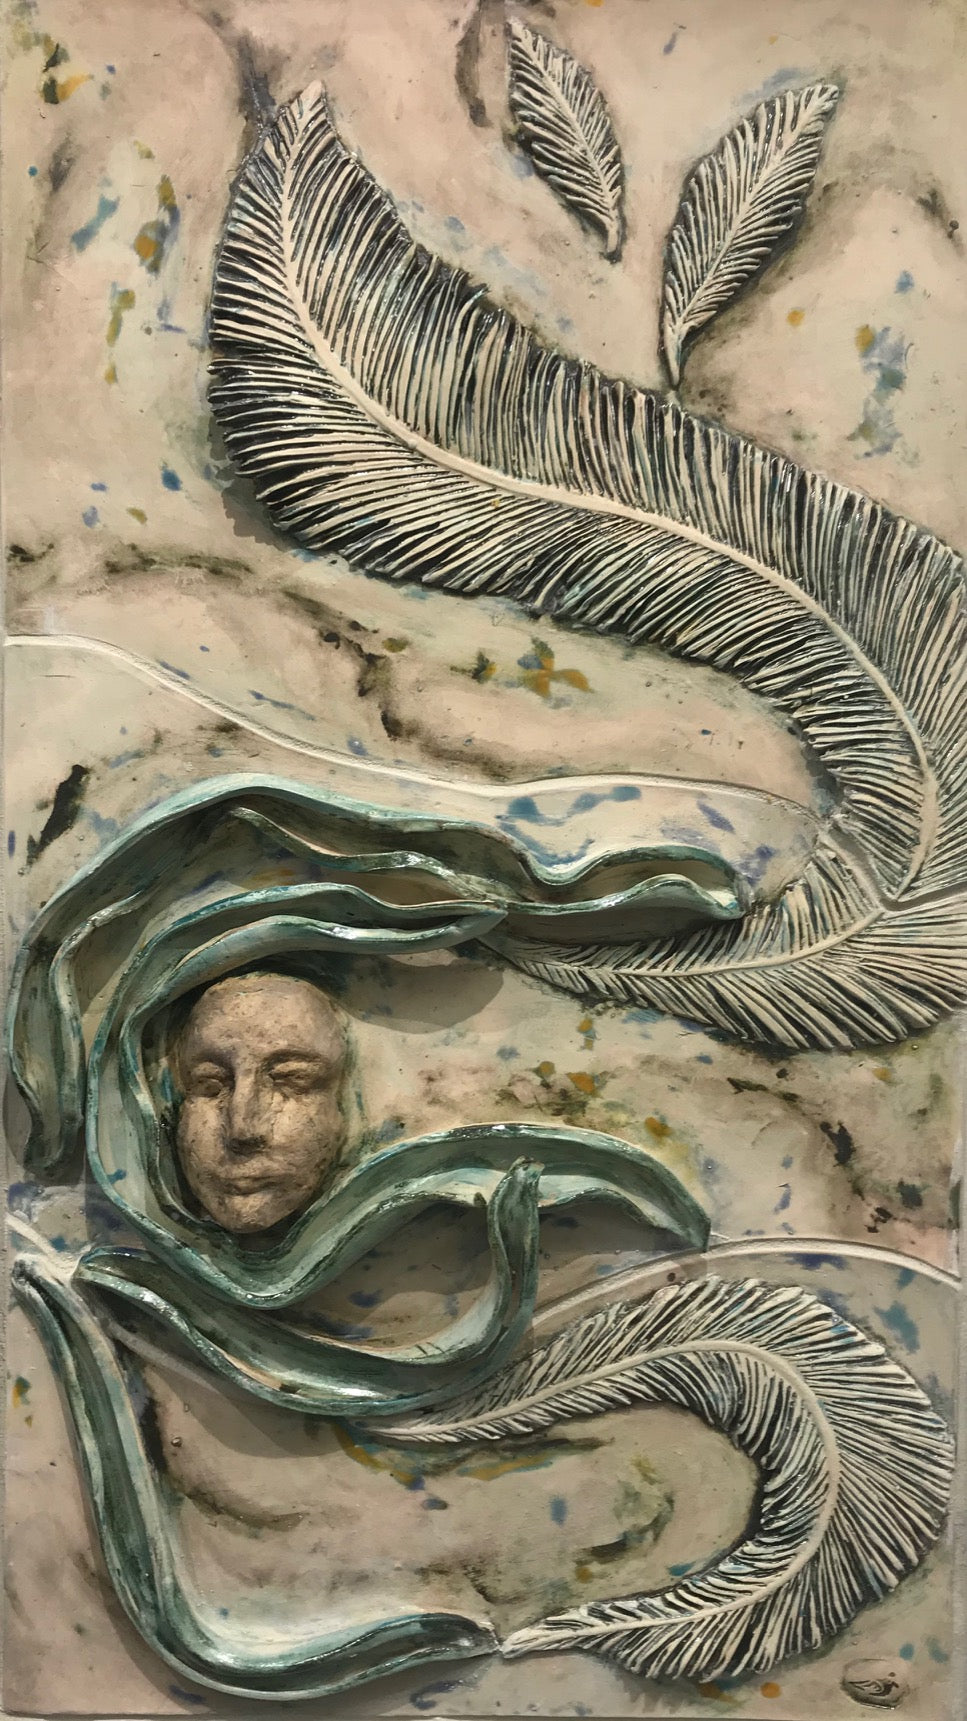 ANEMOI (Wind), Ceramic Tile Mural, 32"H x 18"W x 1”D, 2021